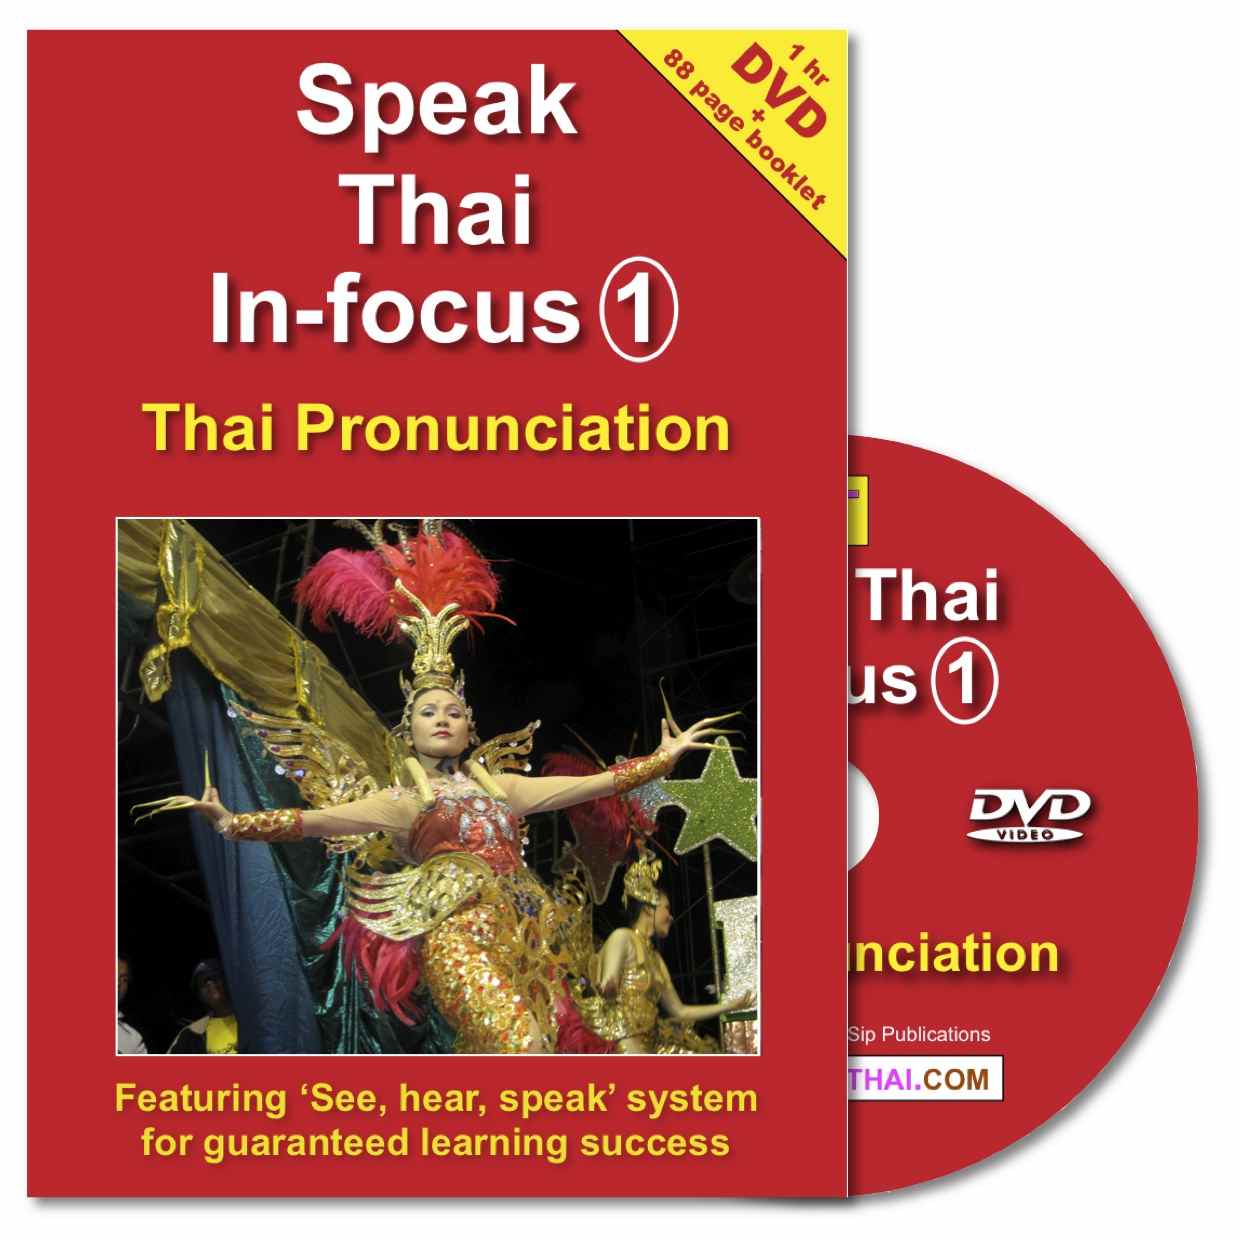 In-focus 1: Thai Pronunciation